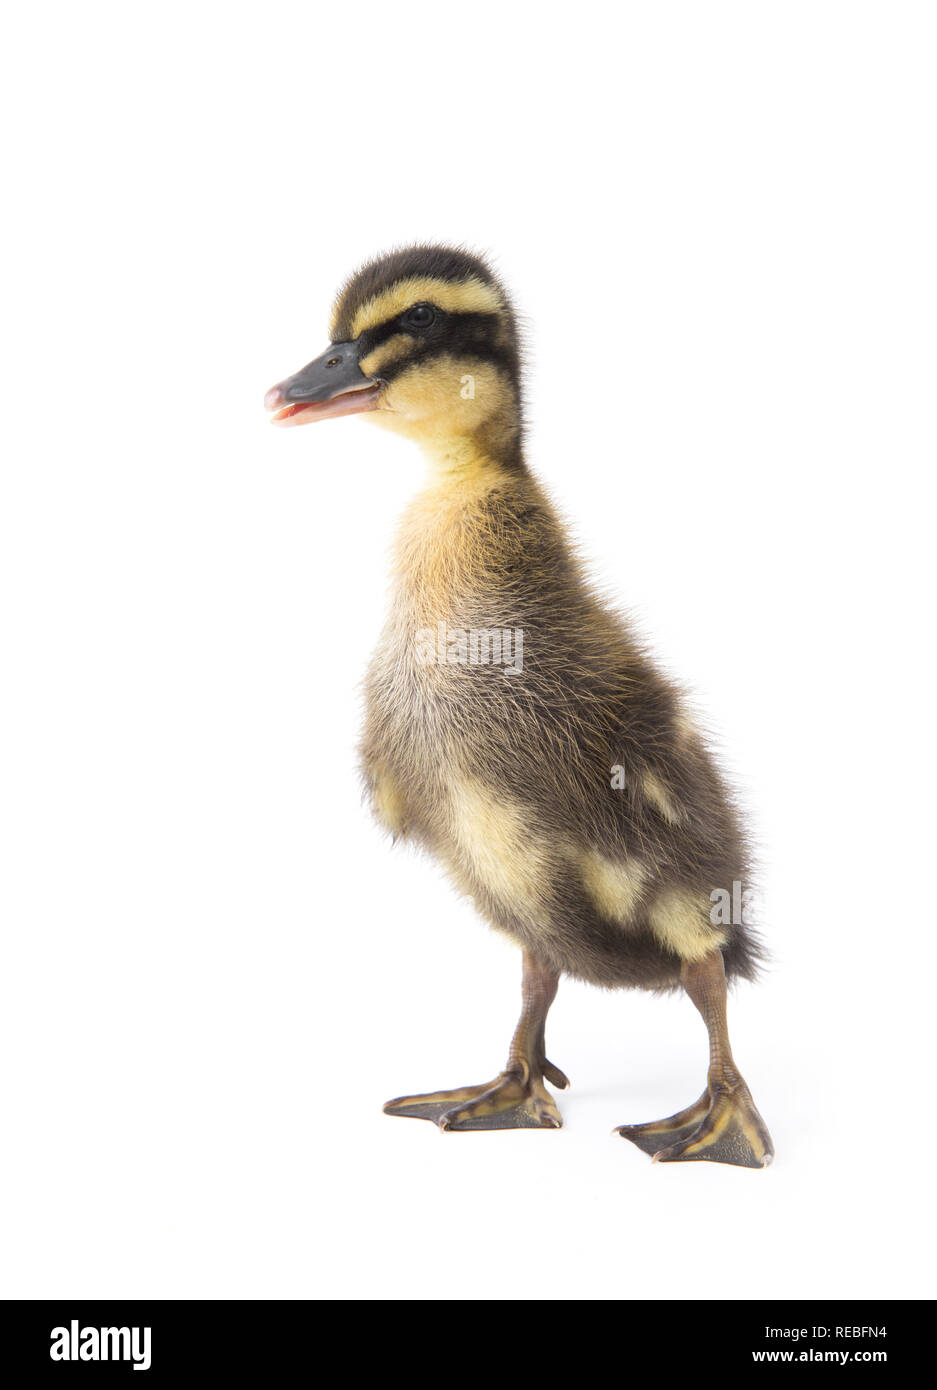 Süße kleine Neugeborene flauschige Entlein. Eine junge Ente auf einem weißen Hintergrund. Stockfoto